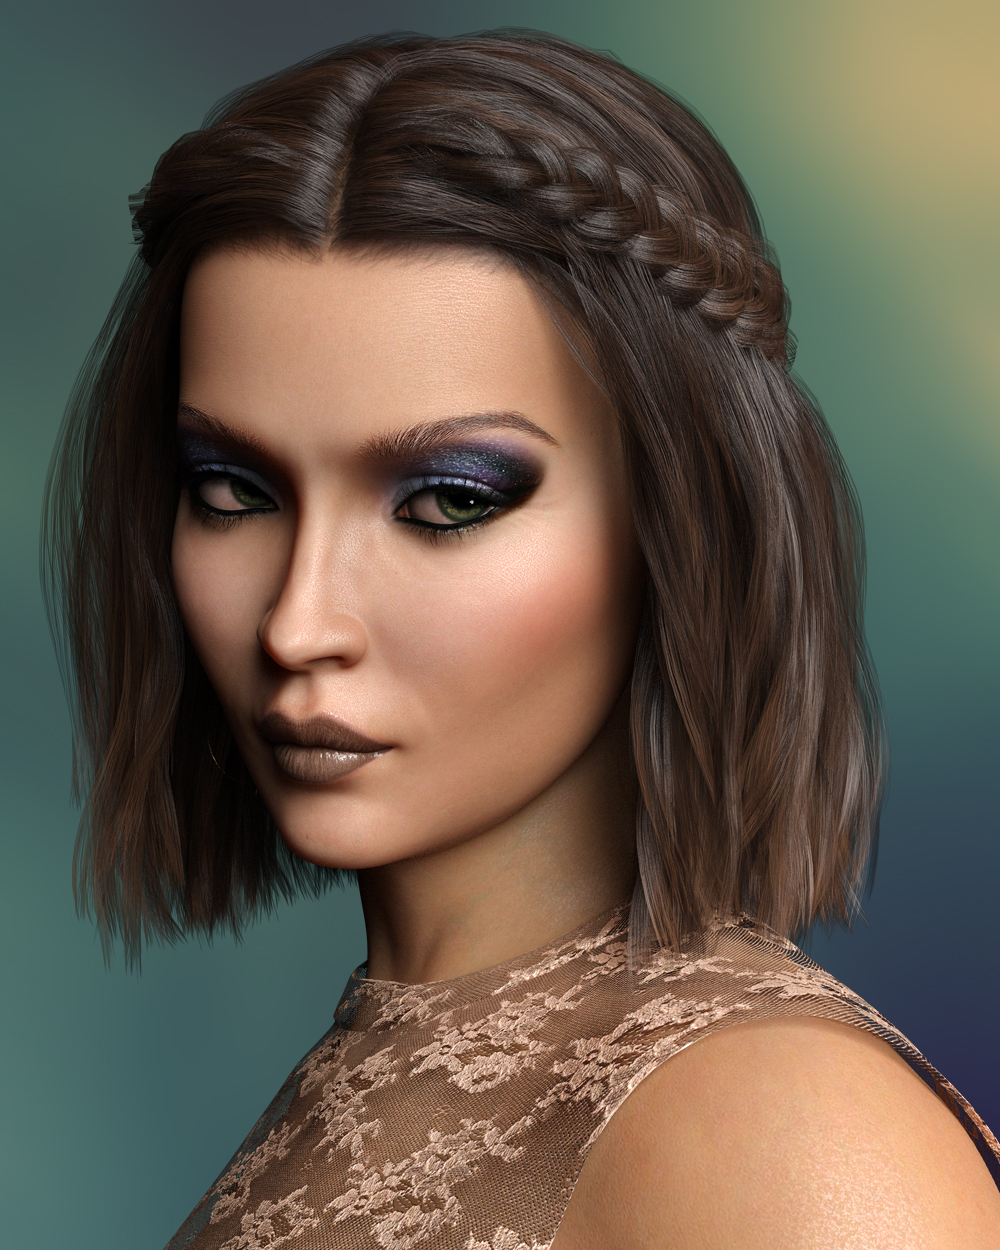 Korian for Genesis 8 Female by: TwiztedMetalhotlilme74, 3D Models by Daz 3D